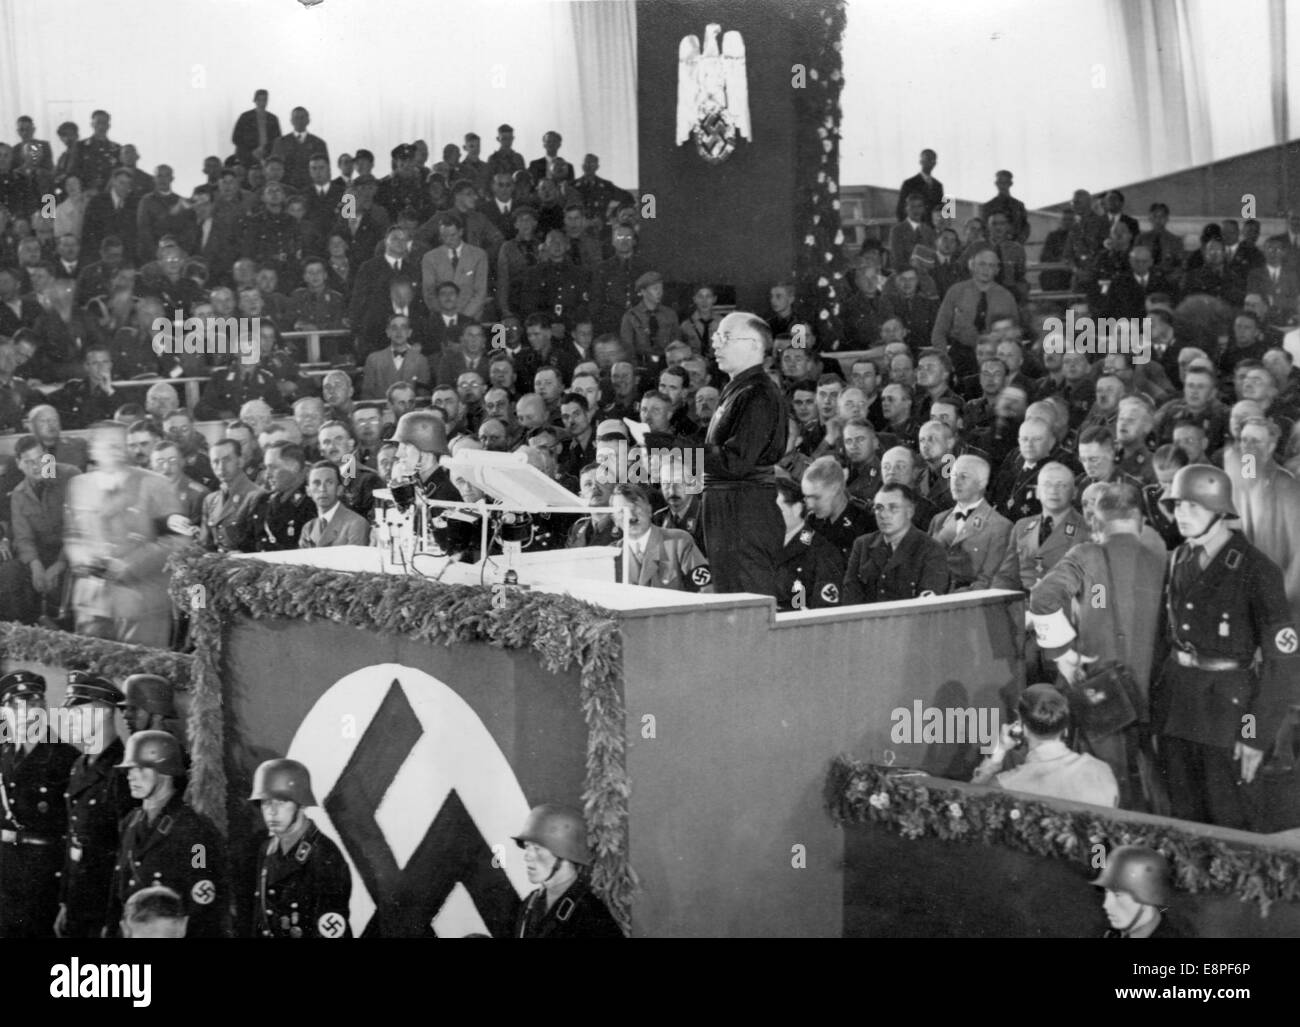 Norimberga Rally 1933 a Norimberga, Germania - Vice segretario del Partito Nazionale fascista italiano (Partito Nazionale Fascista, PNF), Arturo Marcipati, trasmette i saluti del suo partito durante l'apertura del congresso del partito nella Sala Luitpold presso il raduno del partito nazista. Alla sua sinistra nel pubblico Adolf Hitler, a sinistra del leggio Joseph Goebbels. (Difetti di qualità dovuti alla copia storica dell'immagine) Fotoarchiv für Zeitgeschichtee - NESSUN SERVIZIO DI CABLAGGIO – Foto Stock